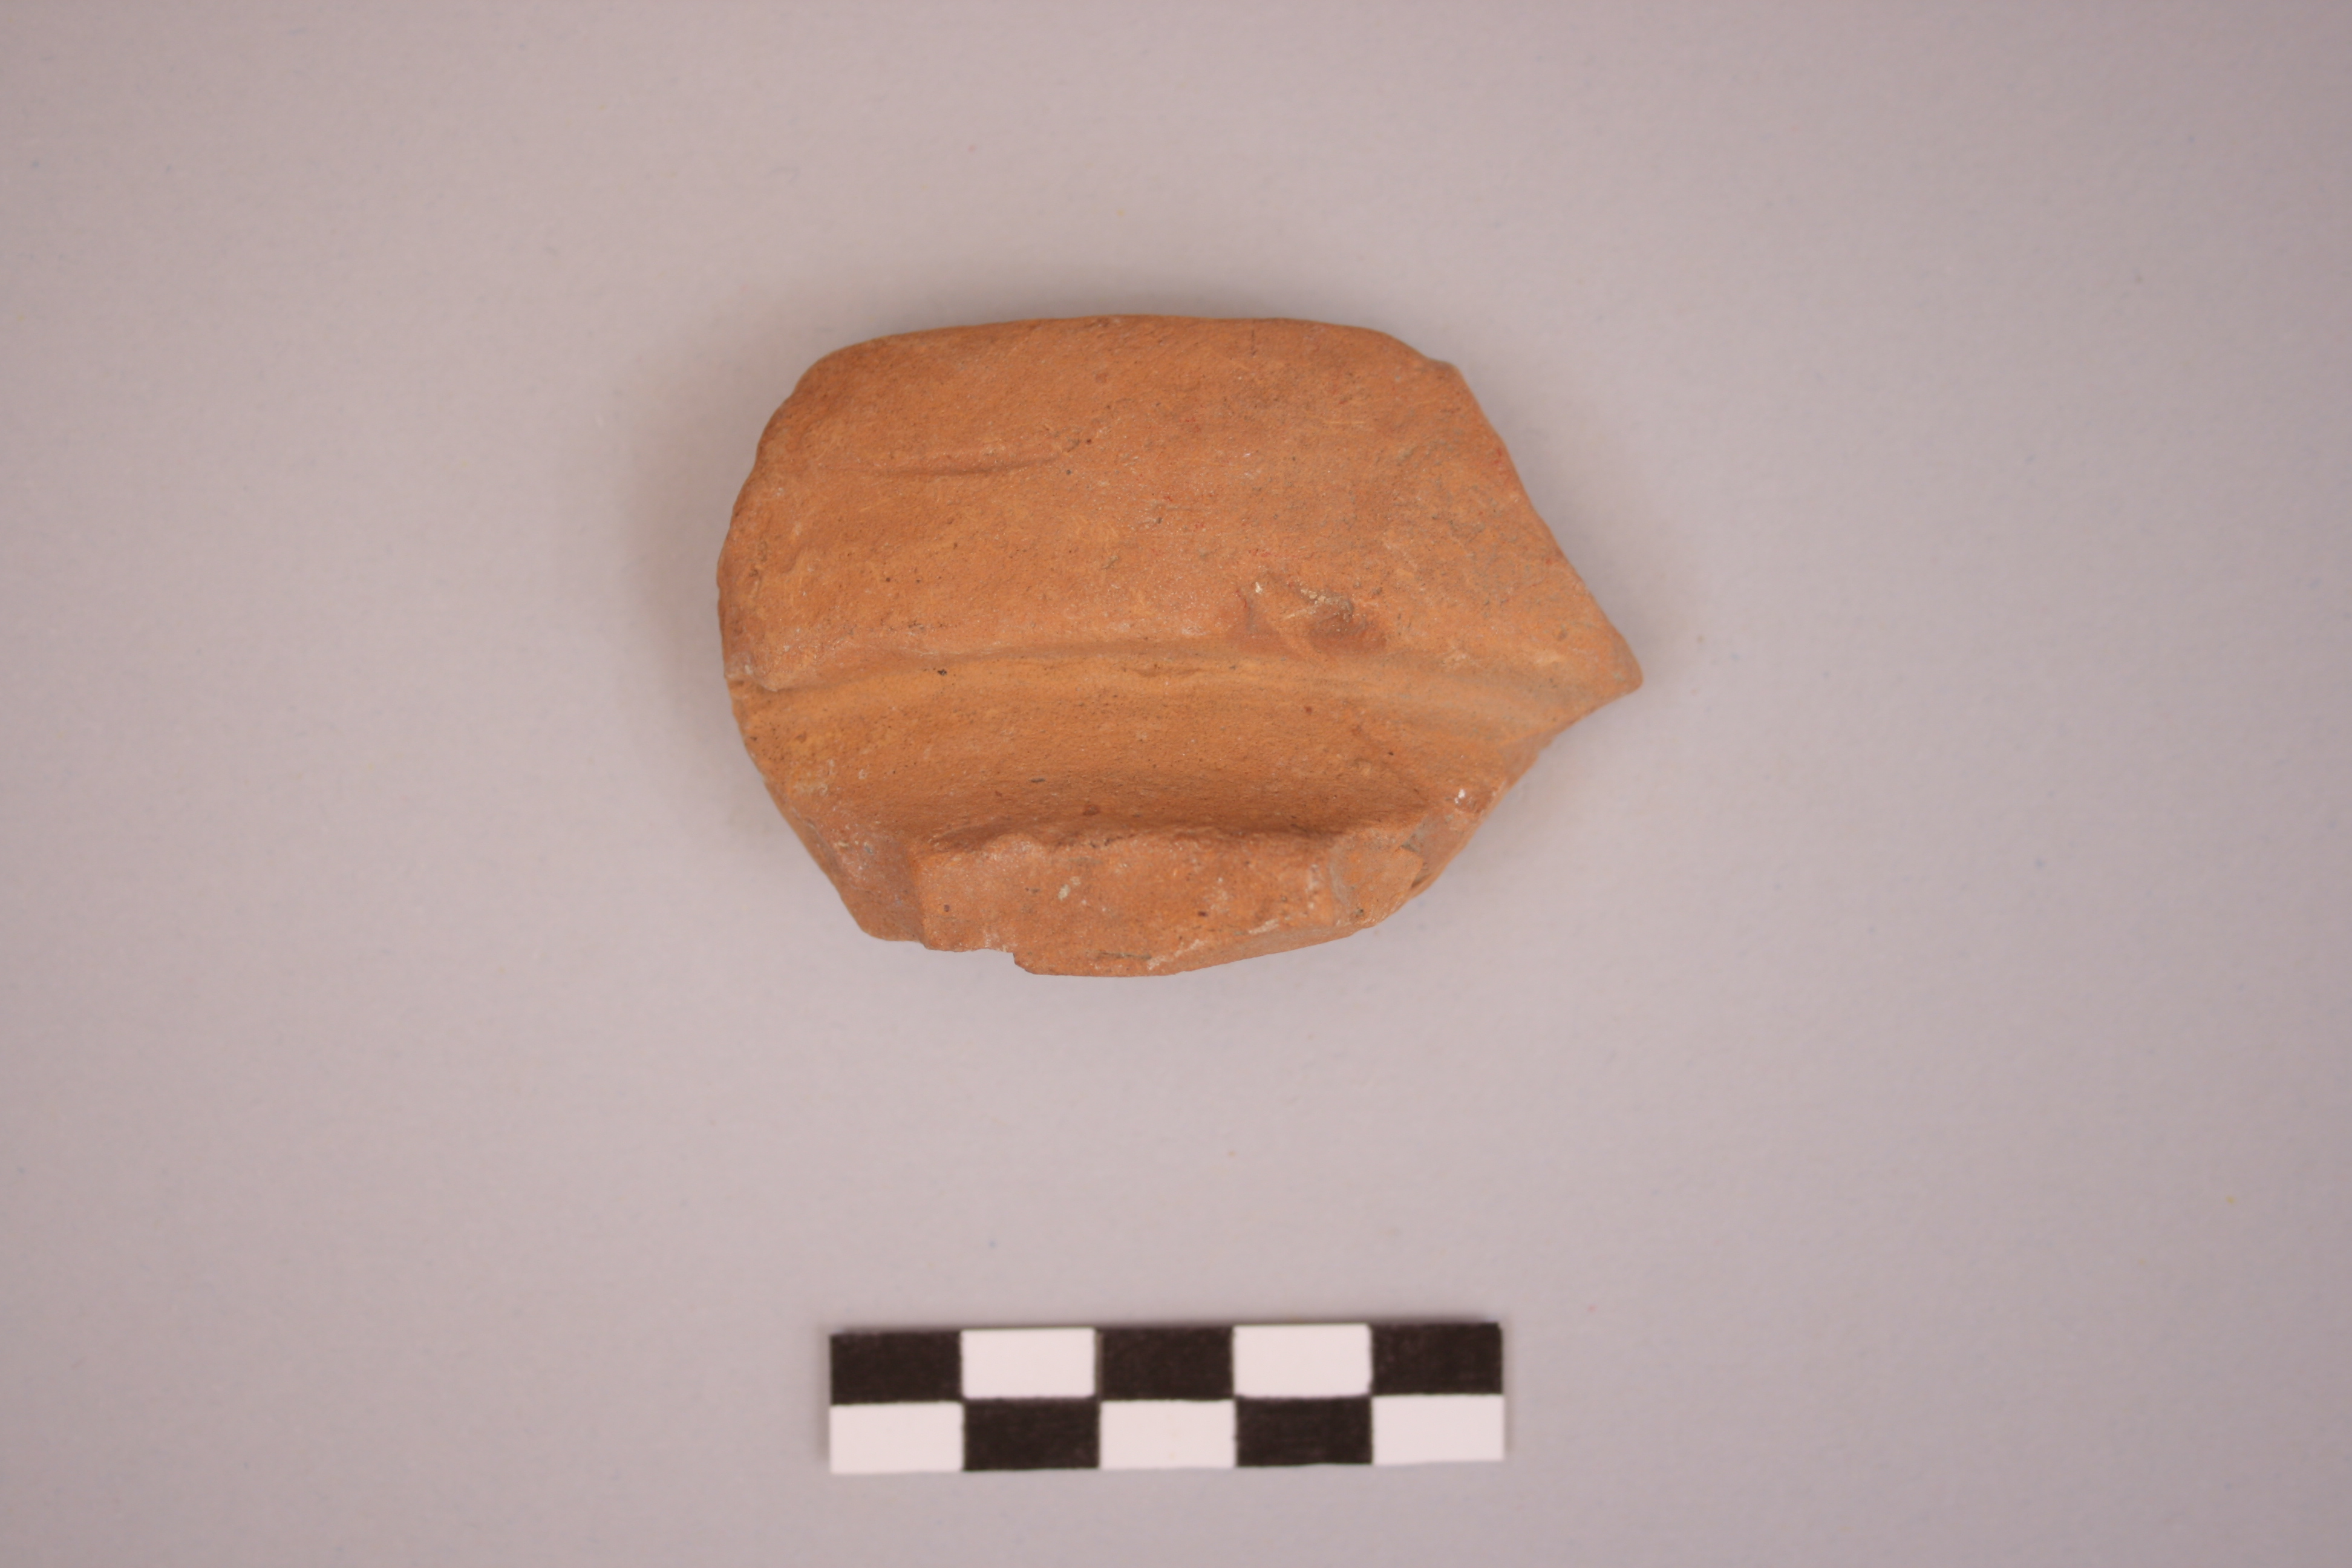 materiale proveniente da ricognizione (ceramica) (Eta' romana)